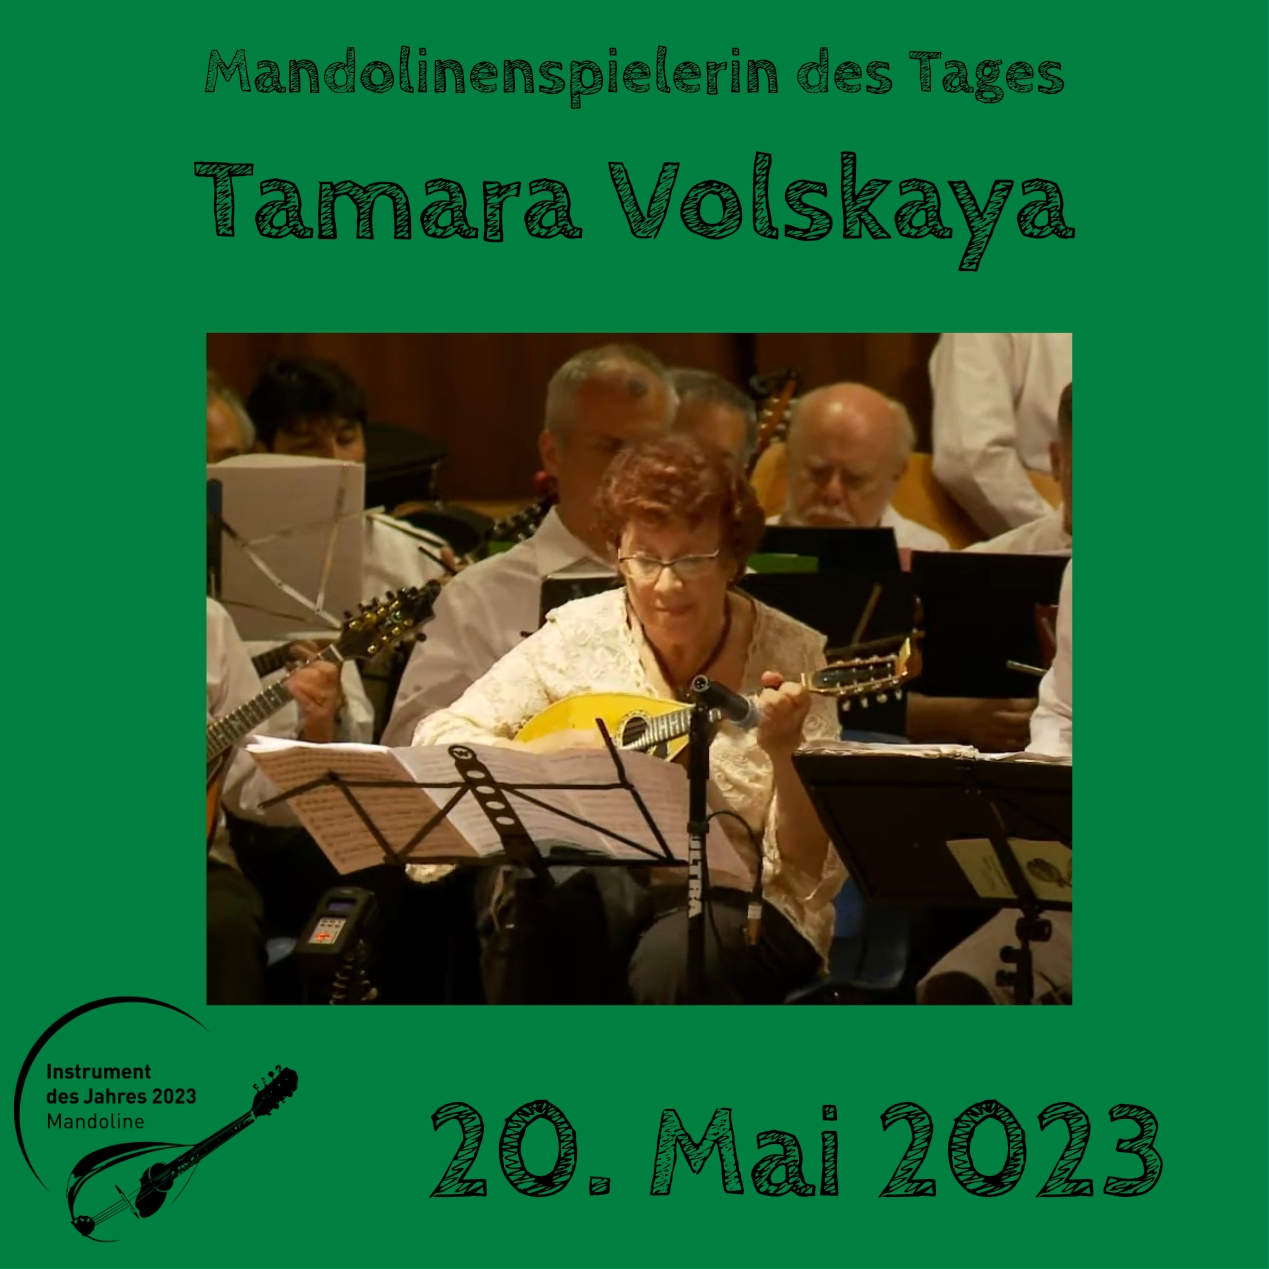 Tamara Volskaya  Mandoline Instrument des Jahres 2023 Mandolinenspieler Mandolinenspielerin des Tages